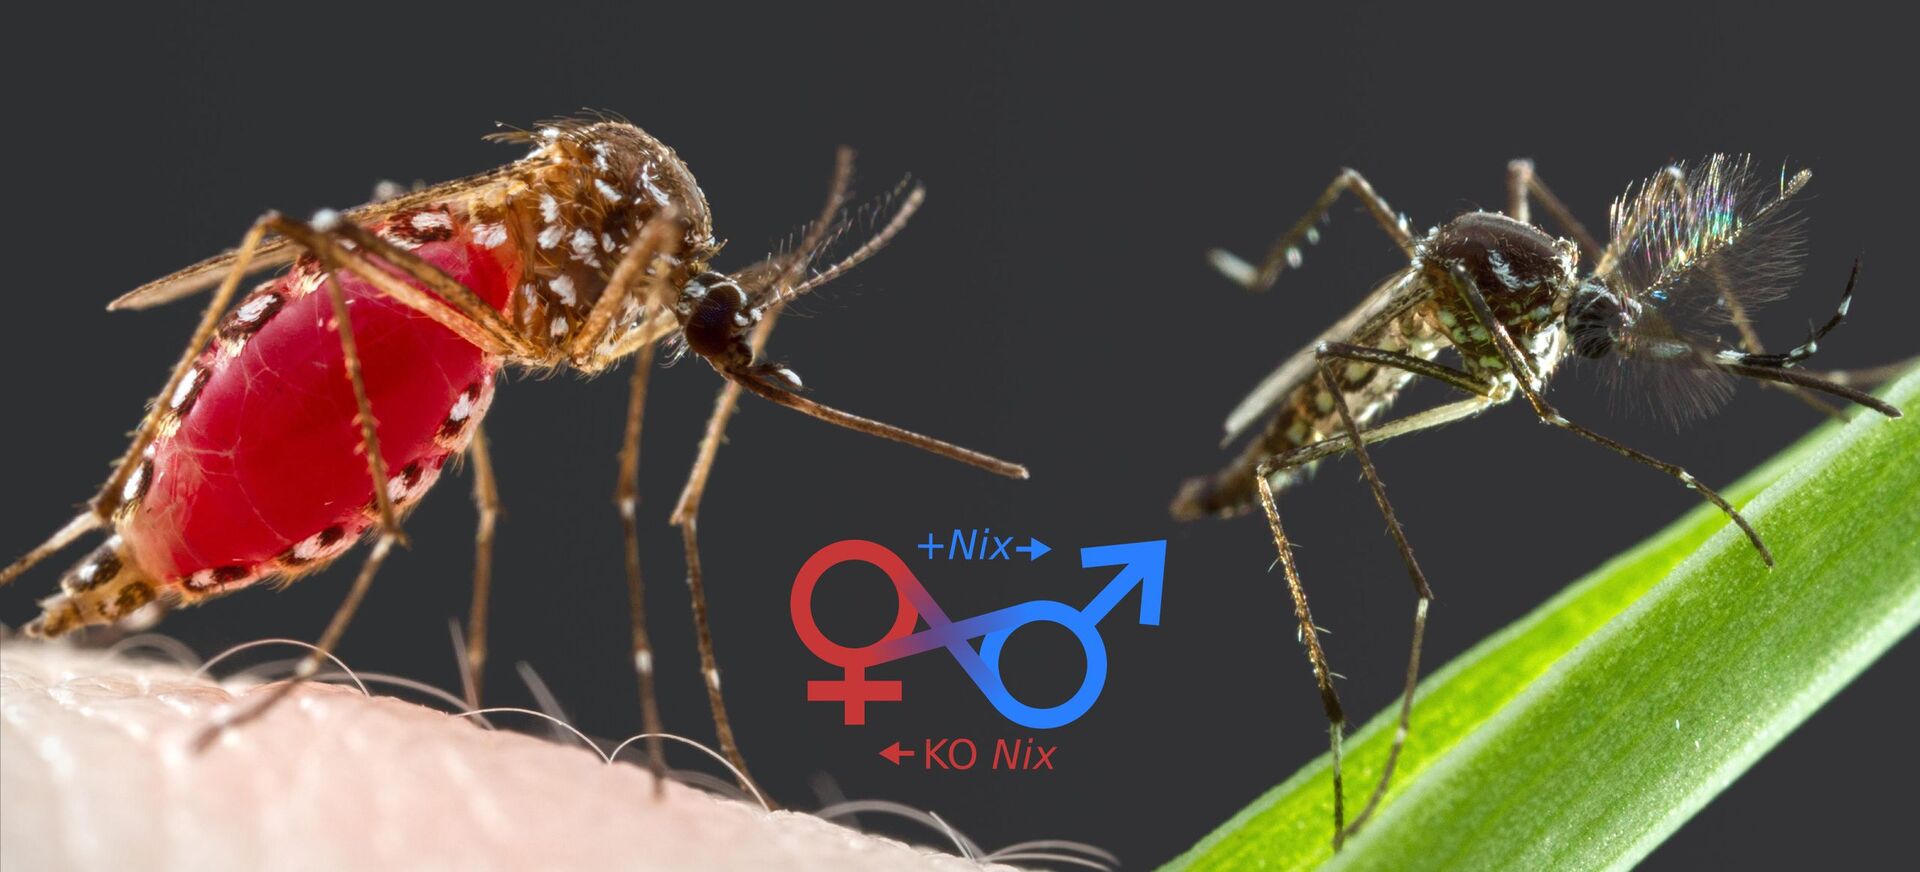 Komár pohlaví